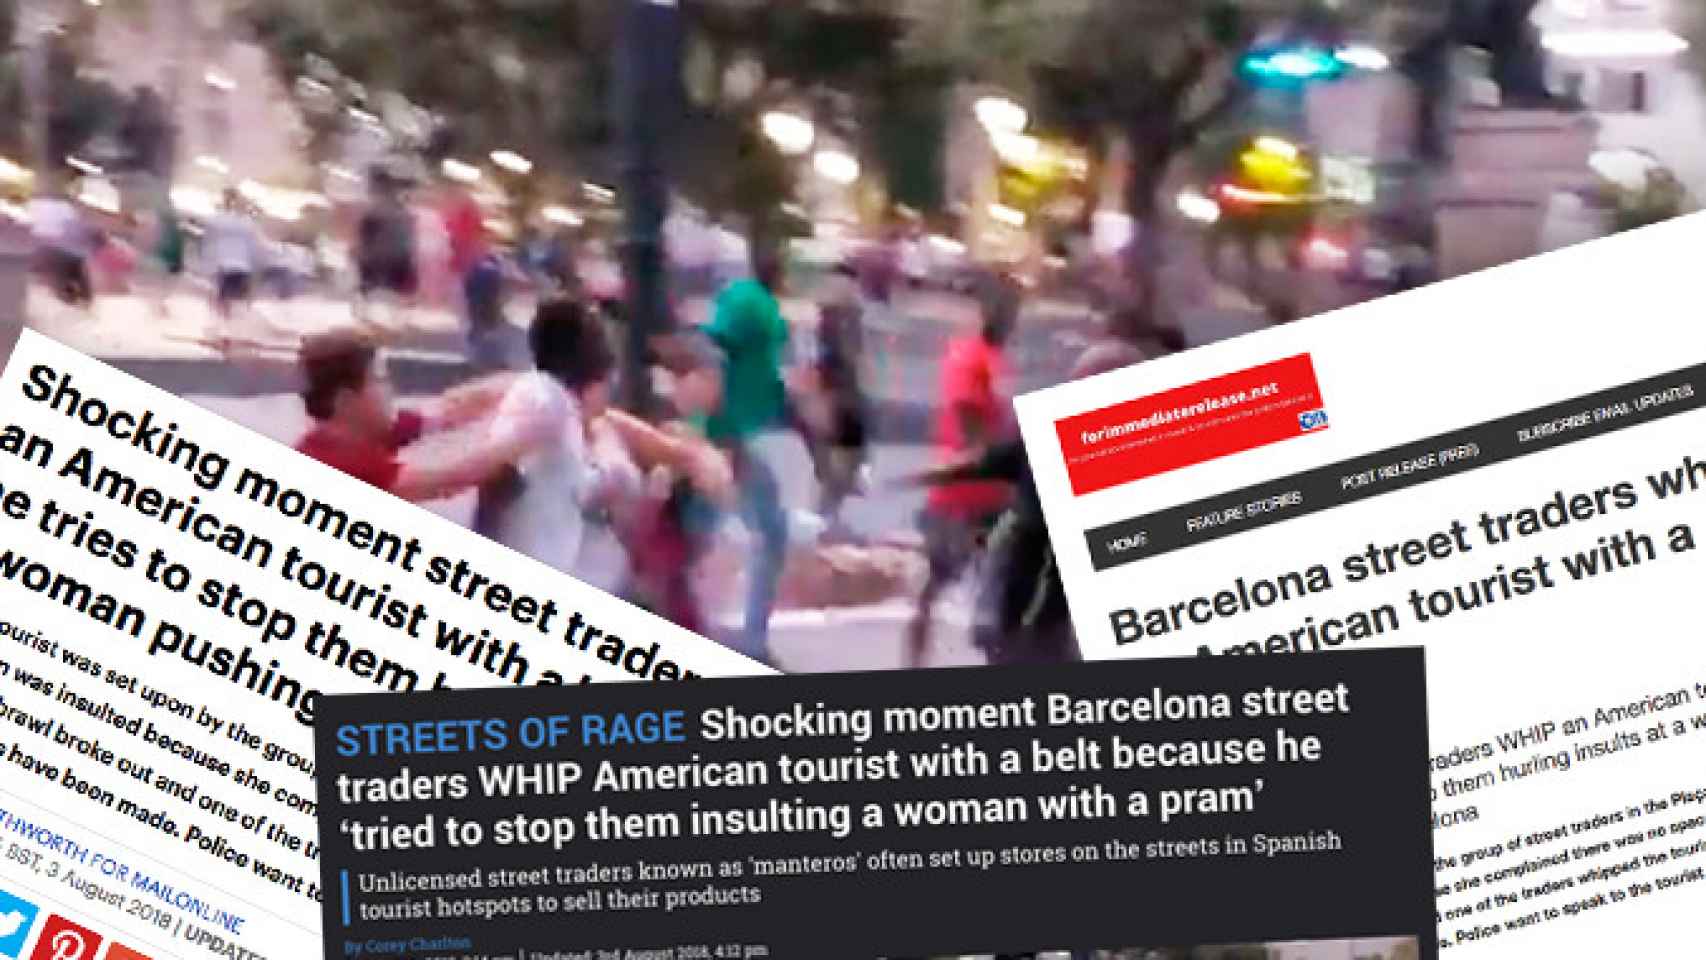 Imagen de la agresión de manteros a un turista y la cobertura de la prensa internacional / FOTOMONTAJE CG